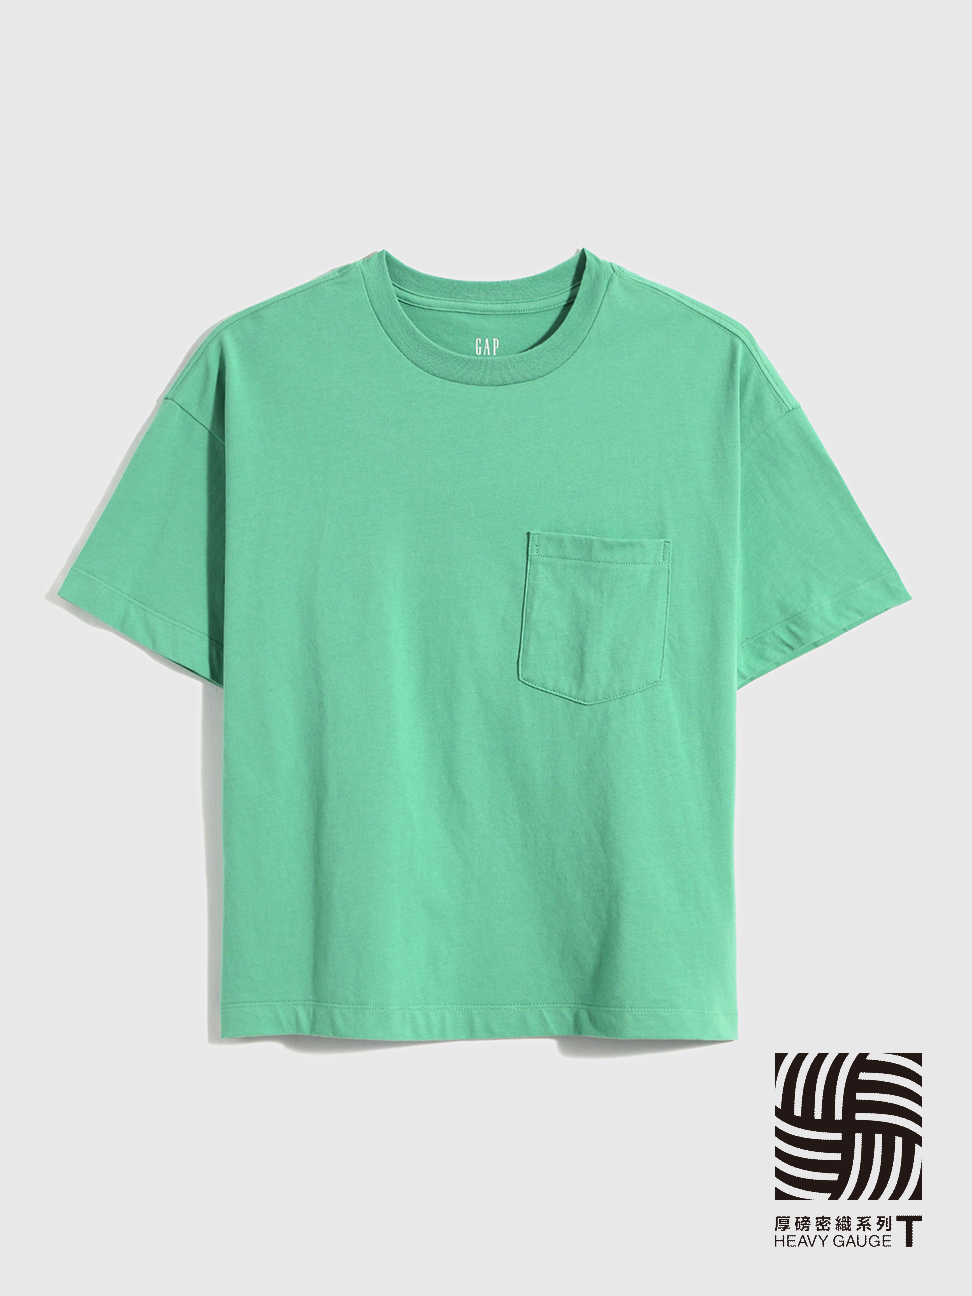 女裝|條紋/素色短袖T恤-綠色